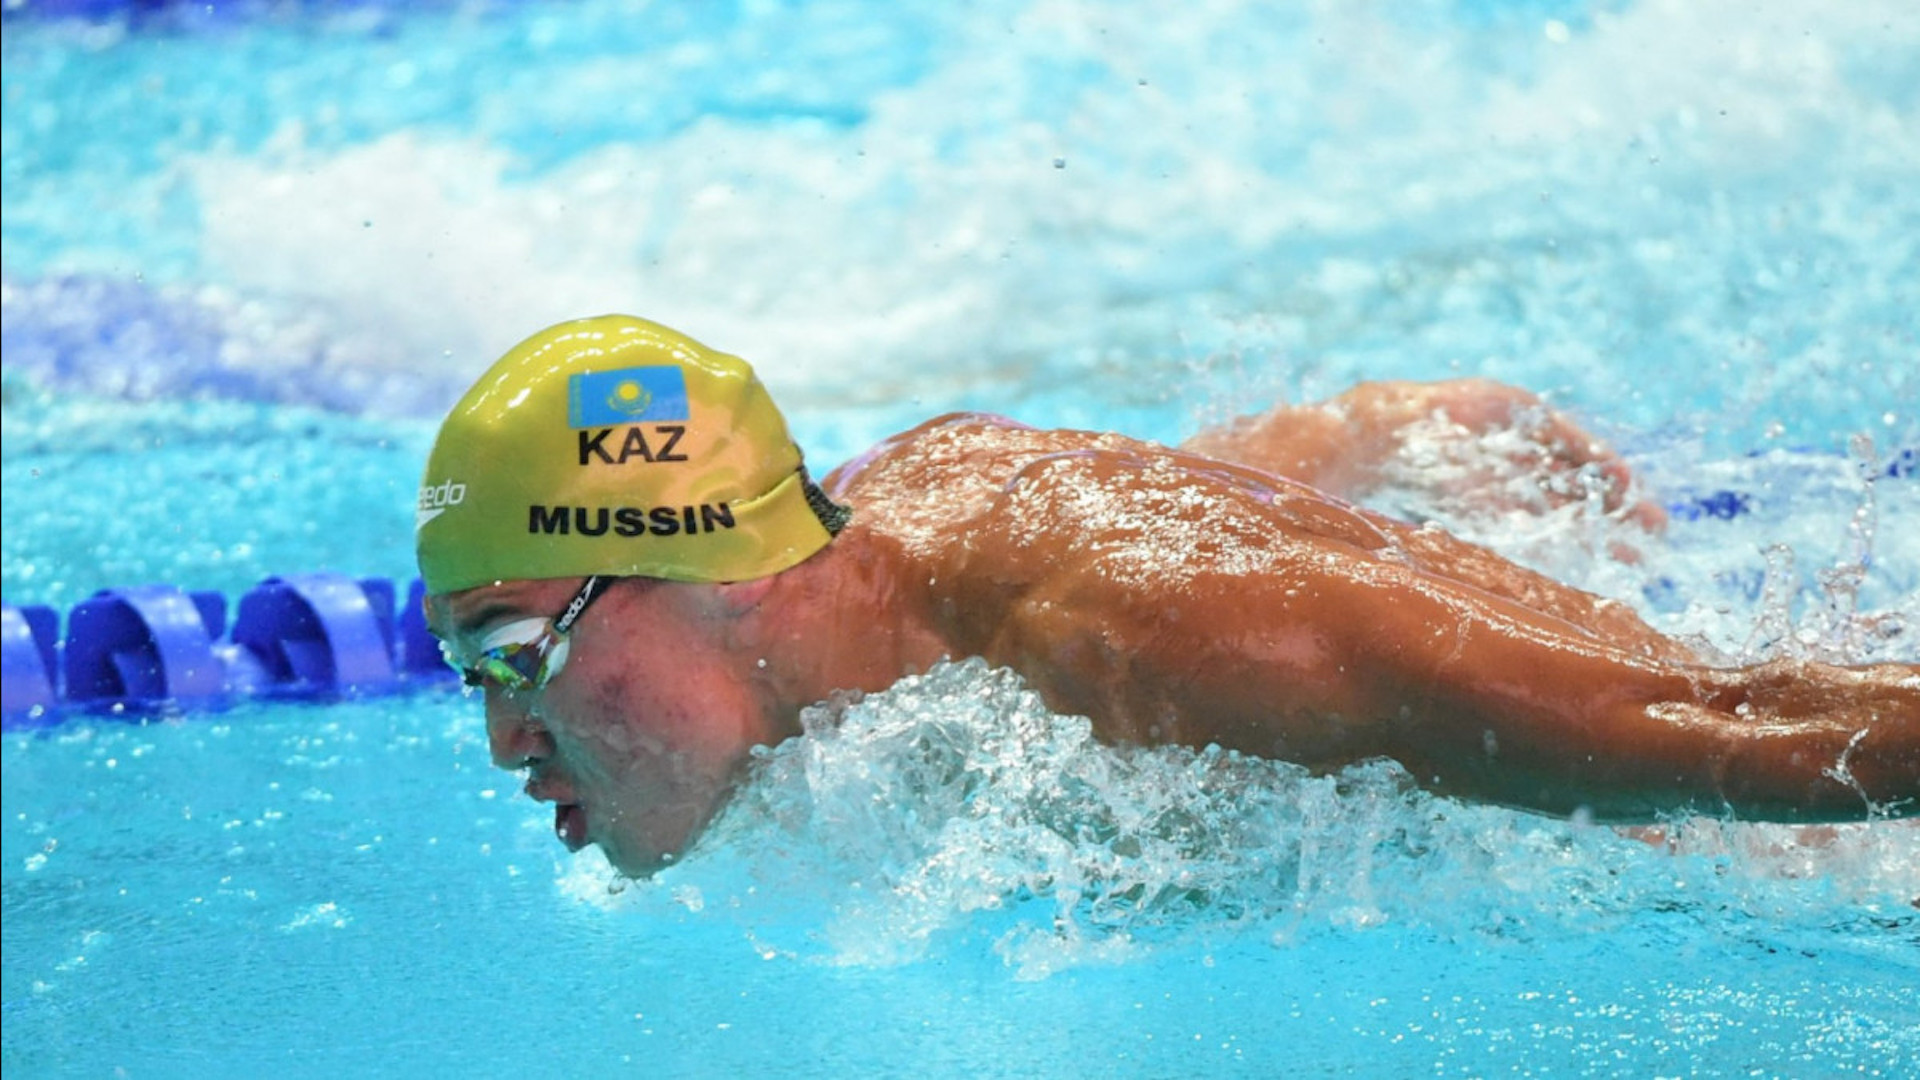 Казахстанский пловец Адильбек Мусин завоевал бронзовую медаль на Универсиаде в Китае